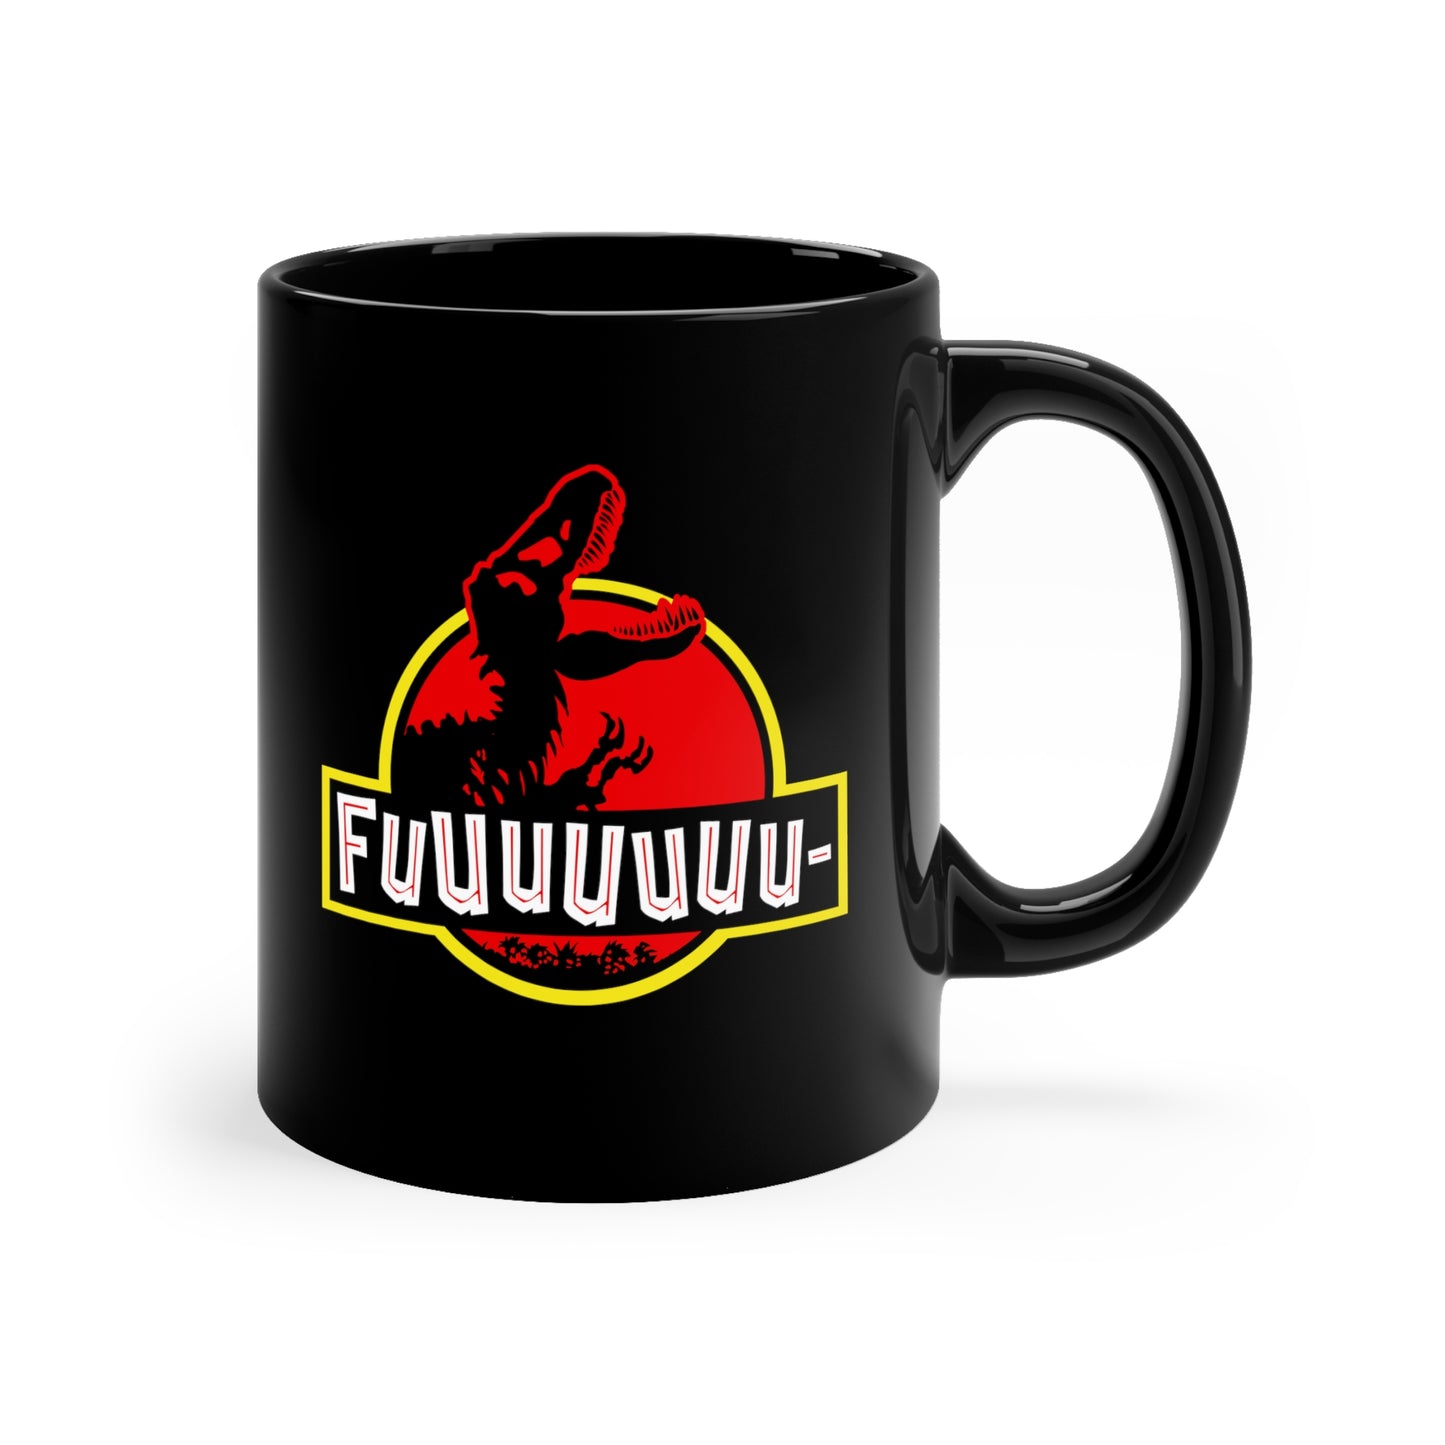 FUUUUUUU- PARK ceramic mug